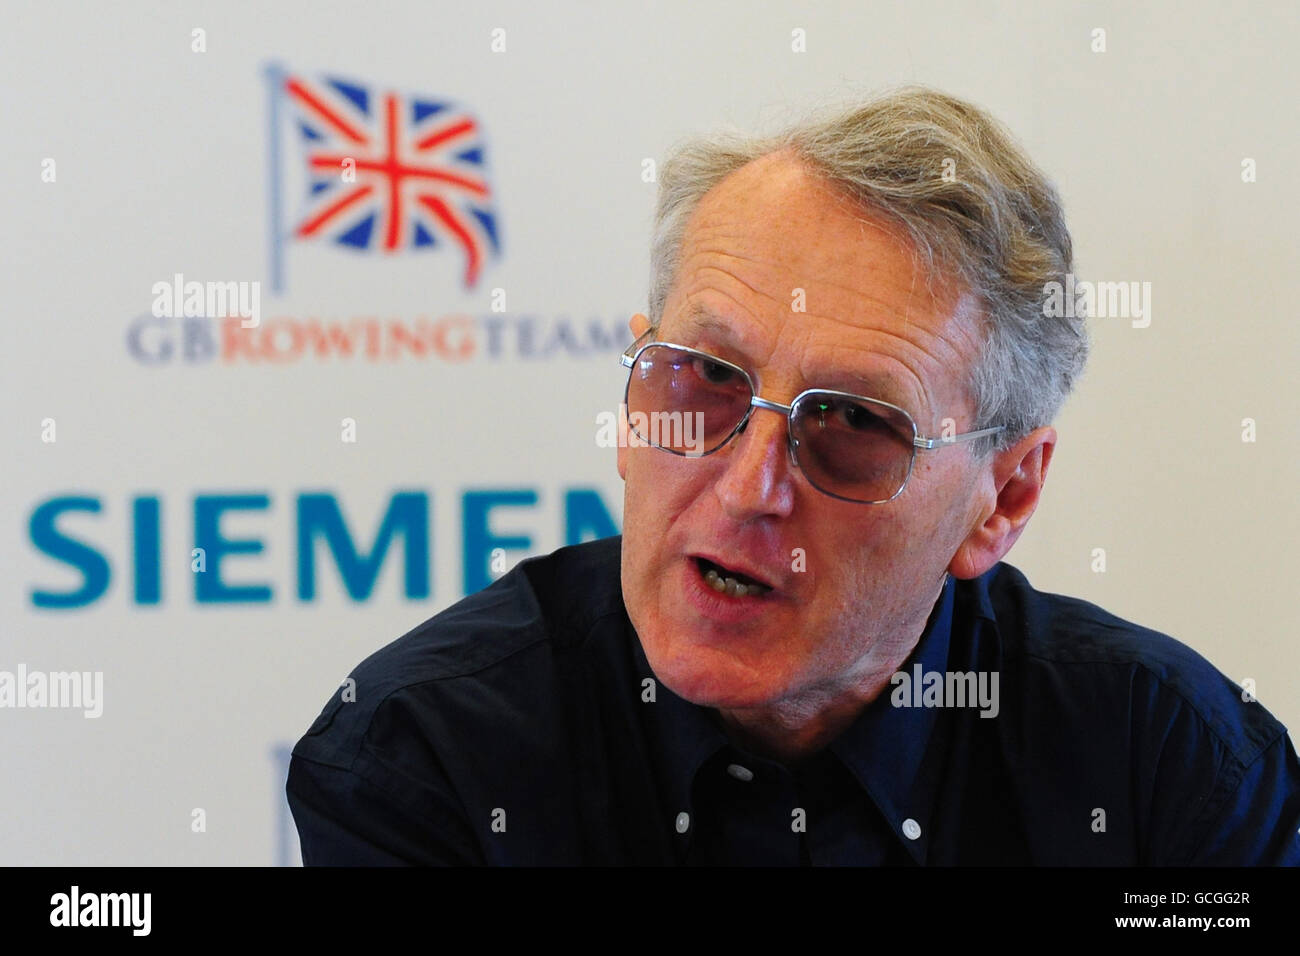 David Tanner CBE, responsable de l'équipe et directeur des performances en Grande-Bretagne, lors de l'annonce de l'équipe d'aviron du Royaume-Uni au Redgrave Pinsent Rowing Lake, à Caversham. Banque D'Images